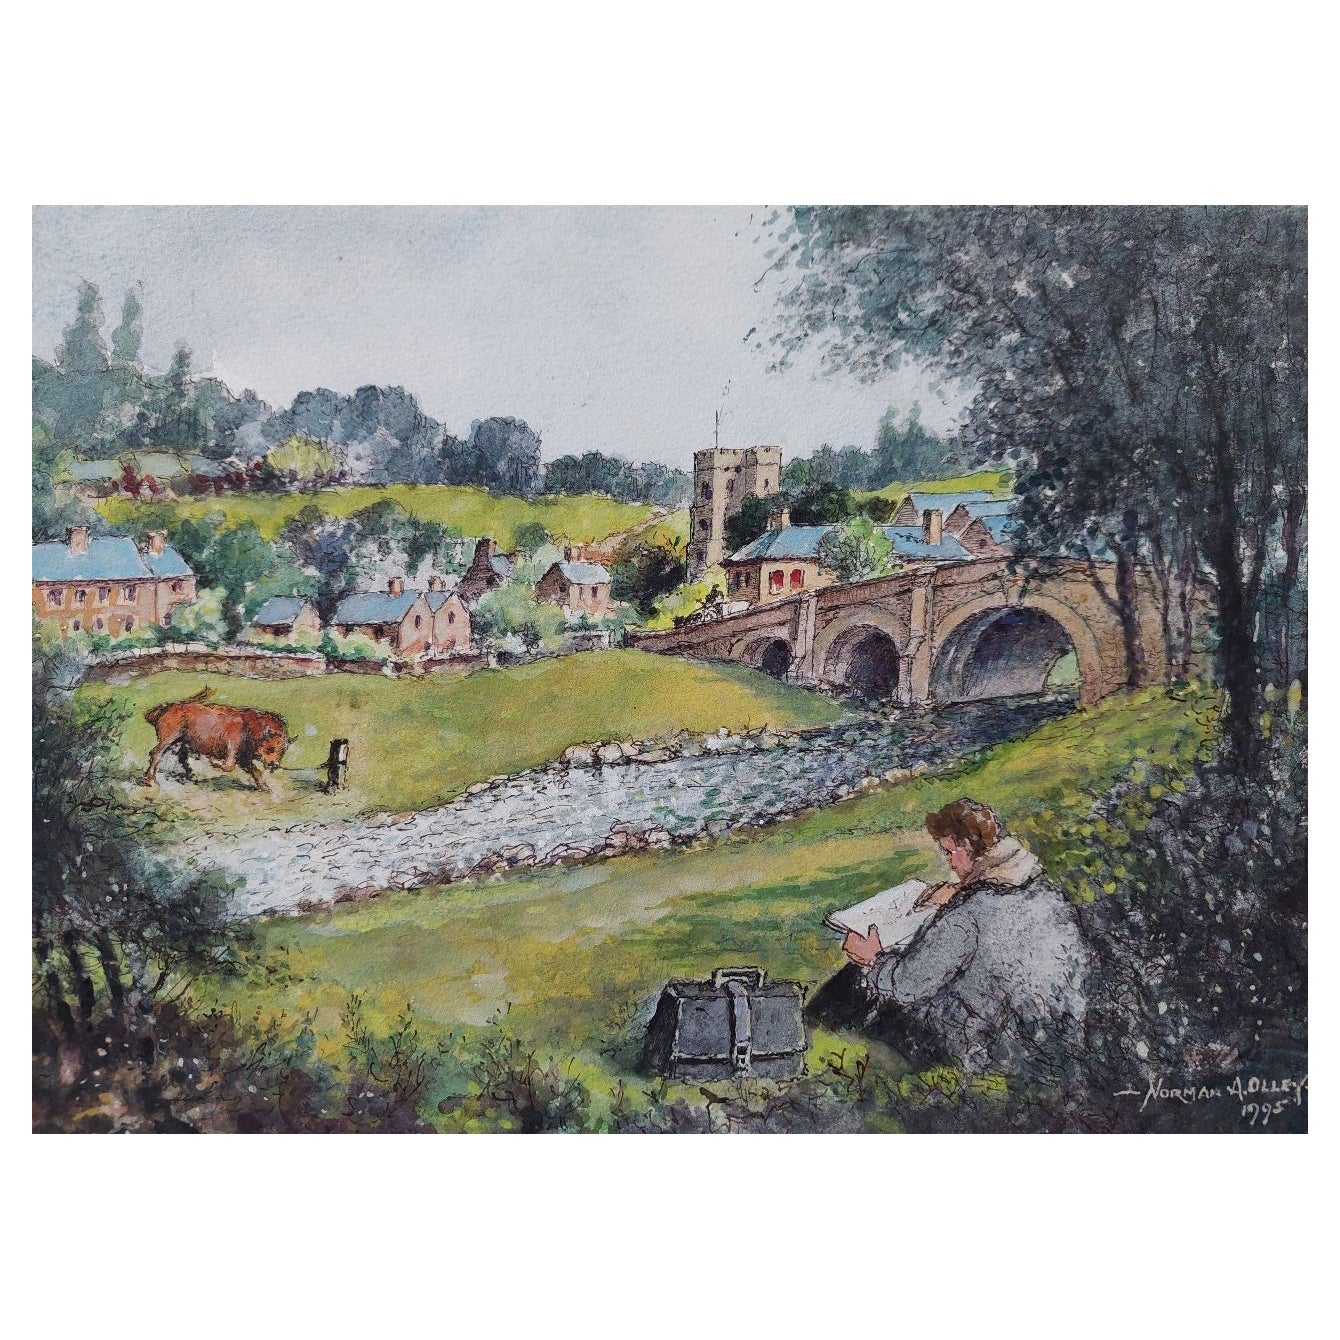 Peinture anglaise traditionnelle du 19ème siècle représentant un dessin d'un artiste dans le Yorkshire